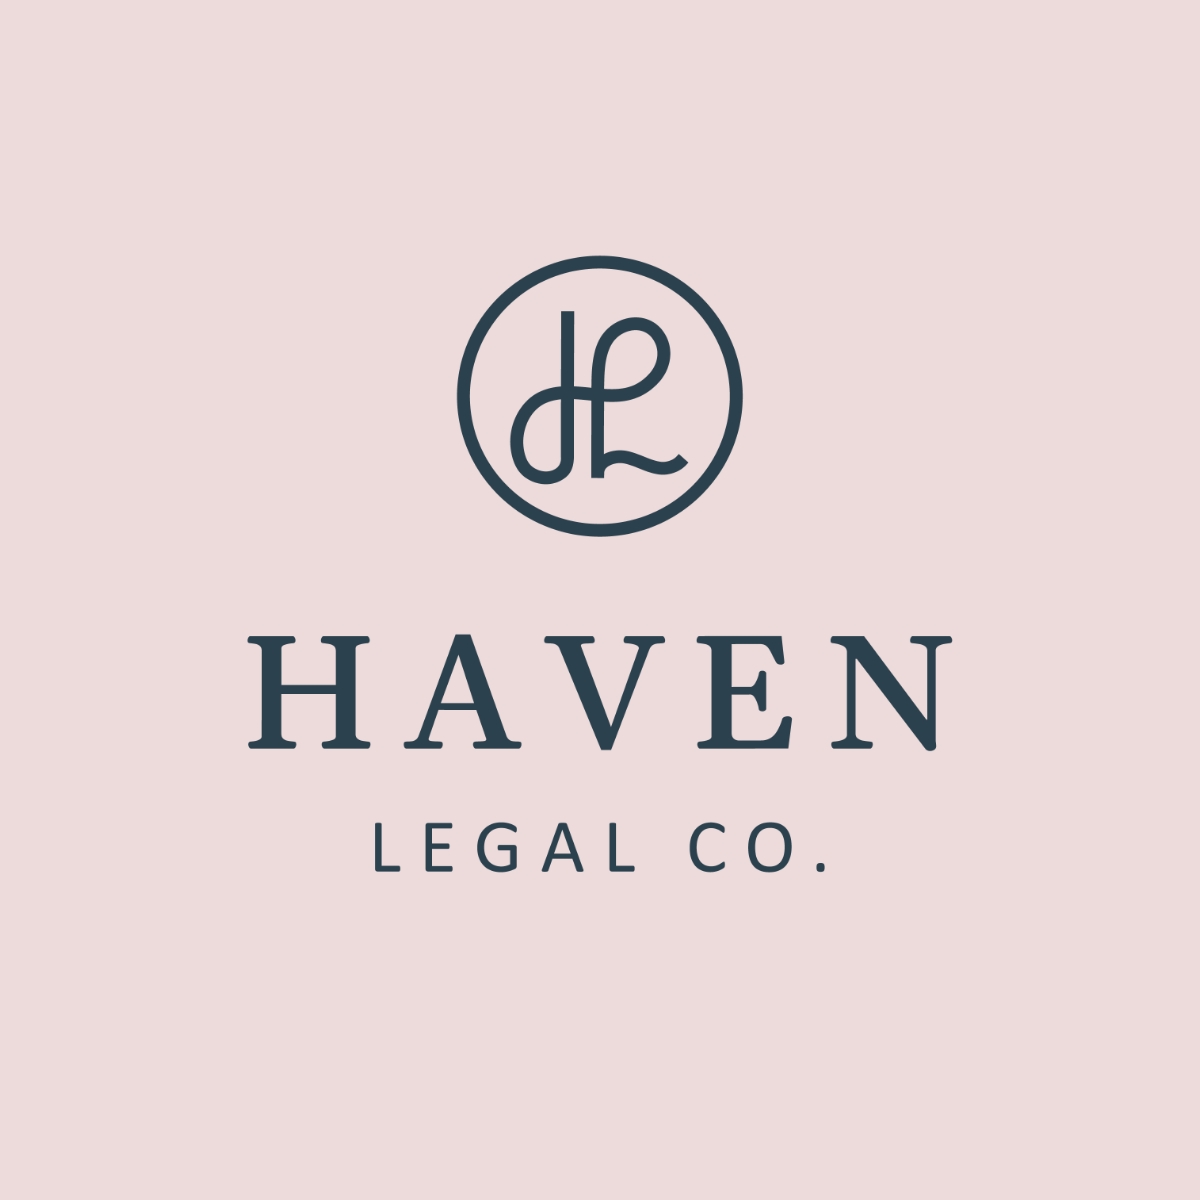 Création du logo d'un cabinet d'avocat